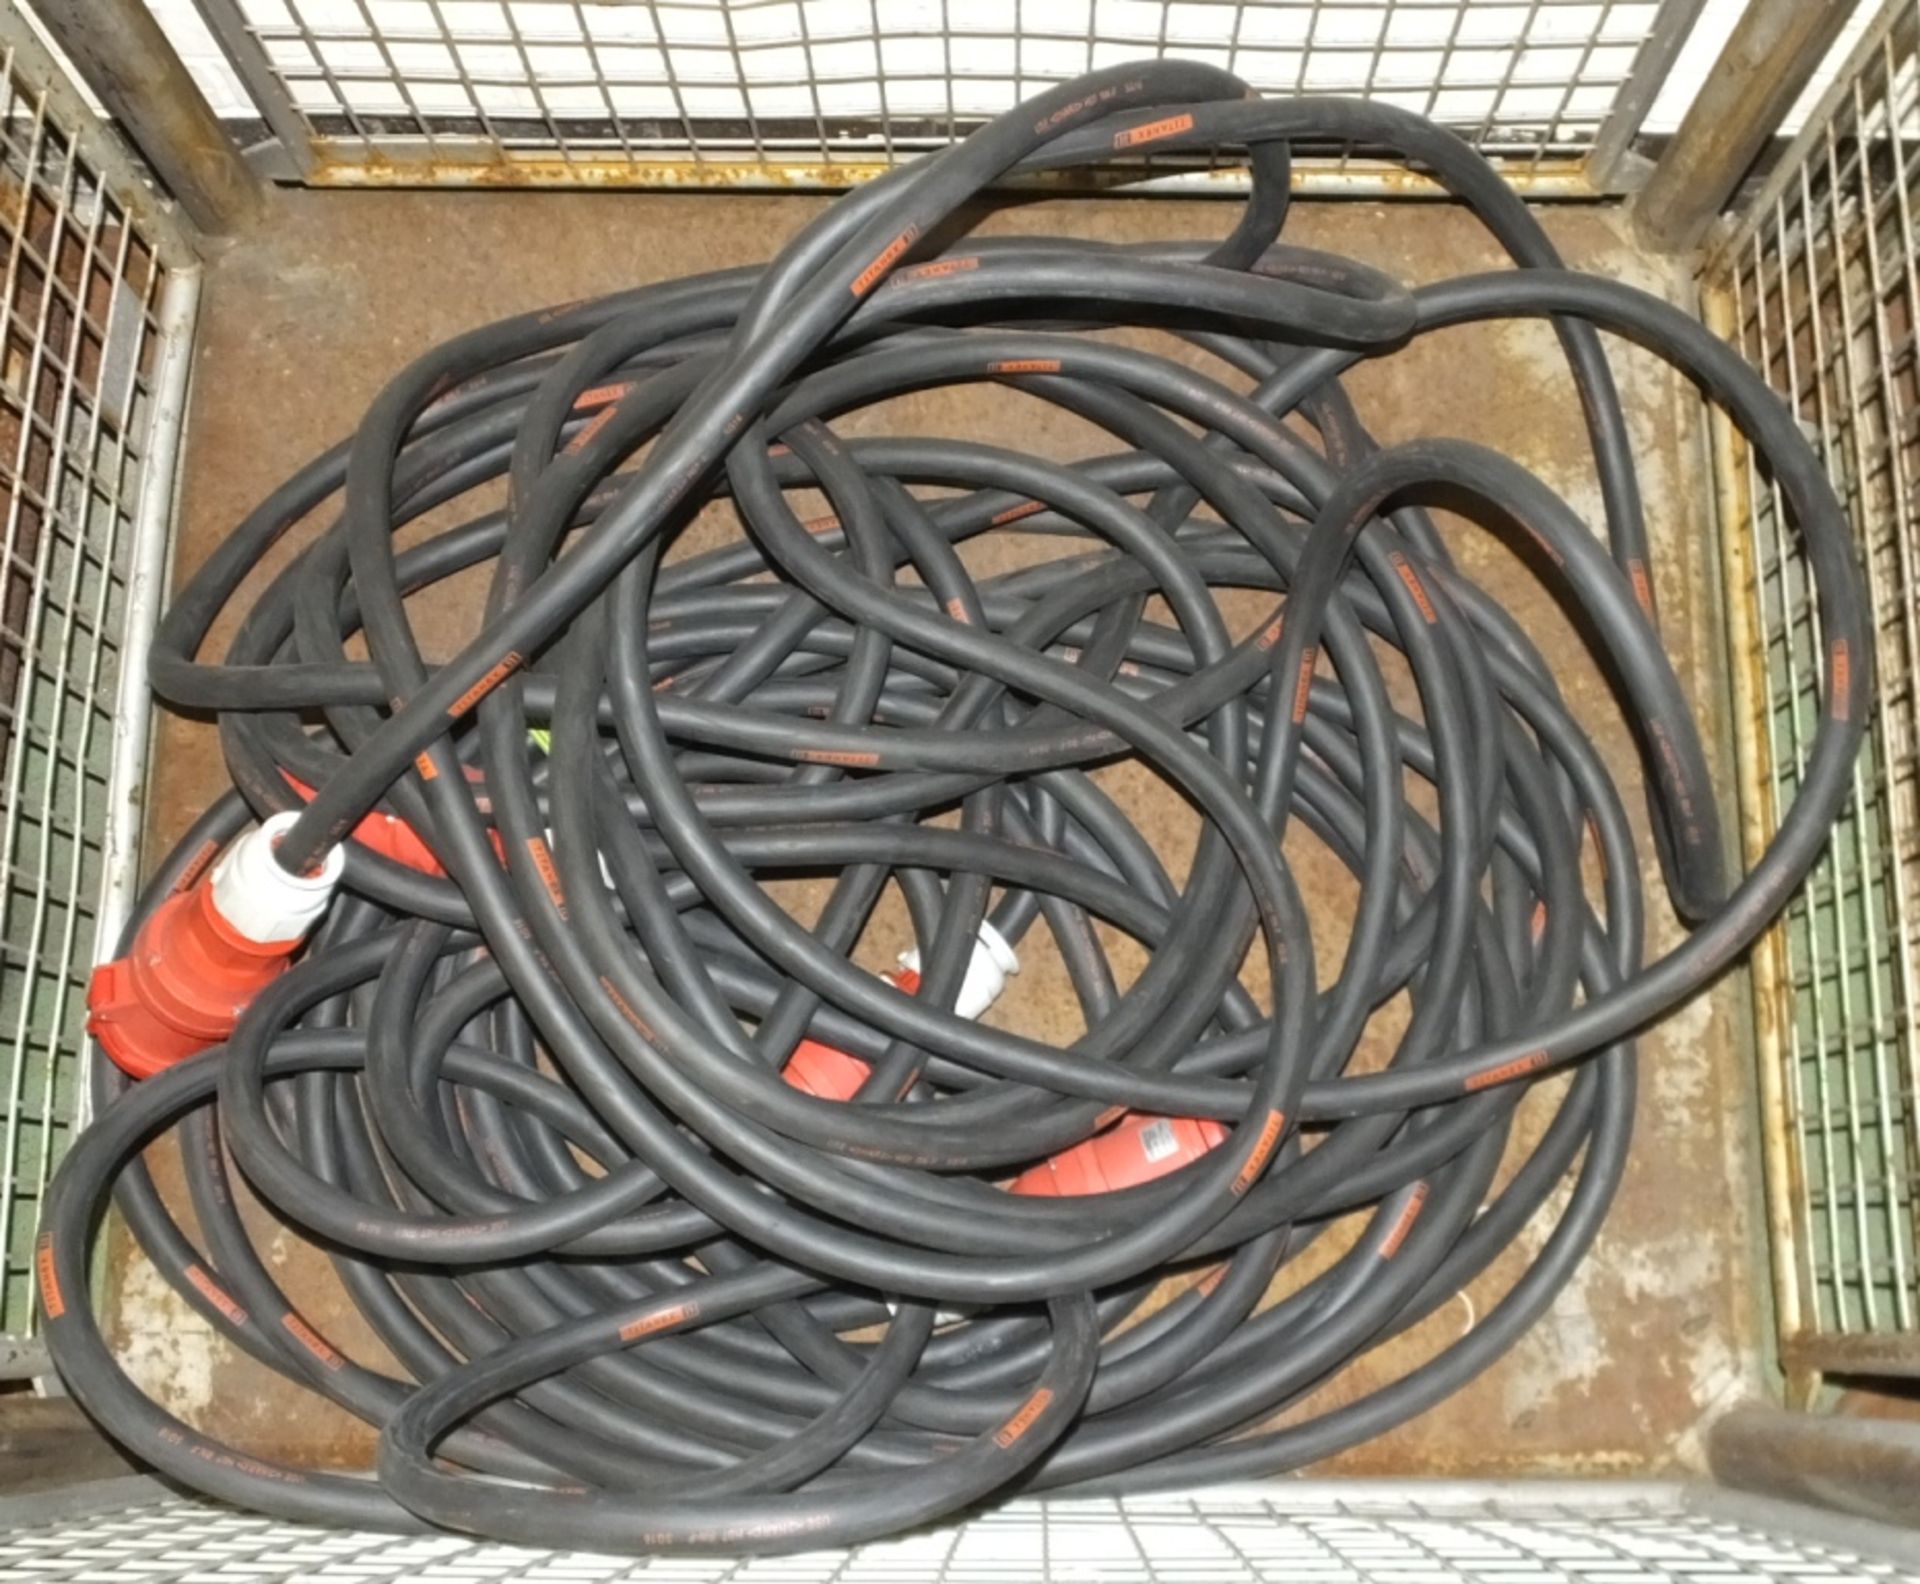 2x Cable Assemblies Black - 30M x 63A